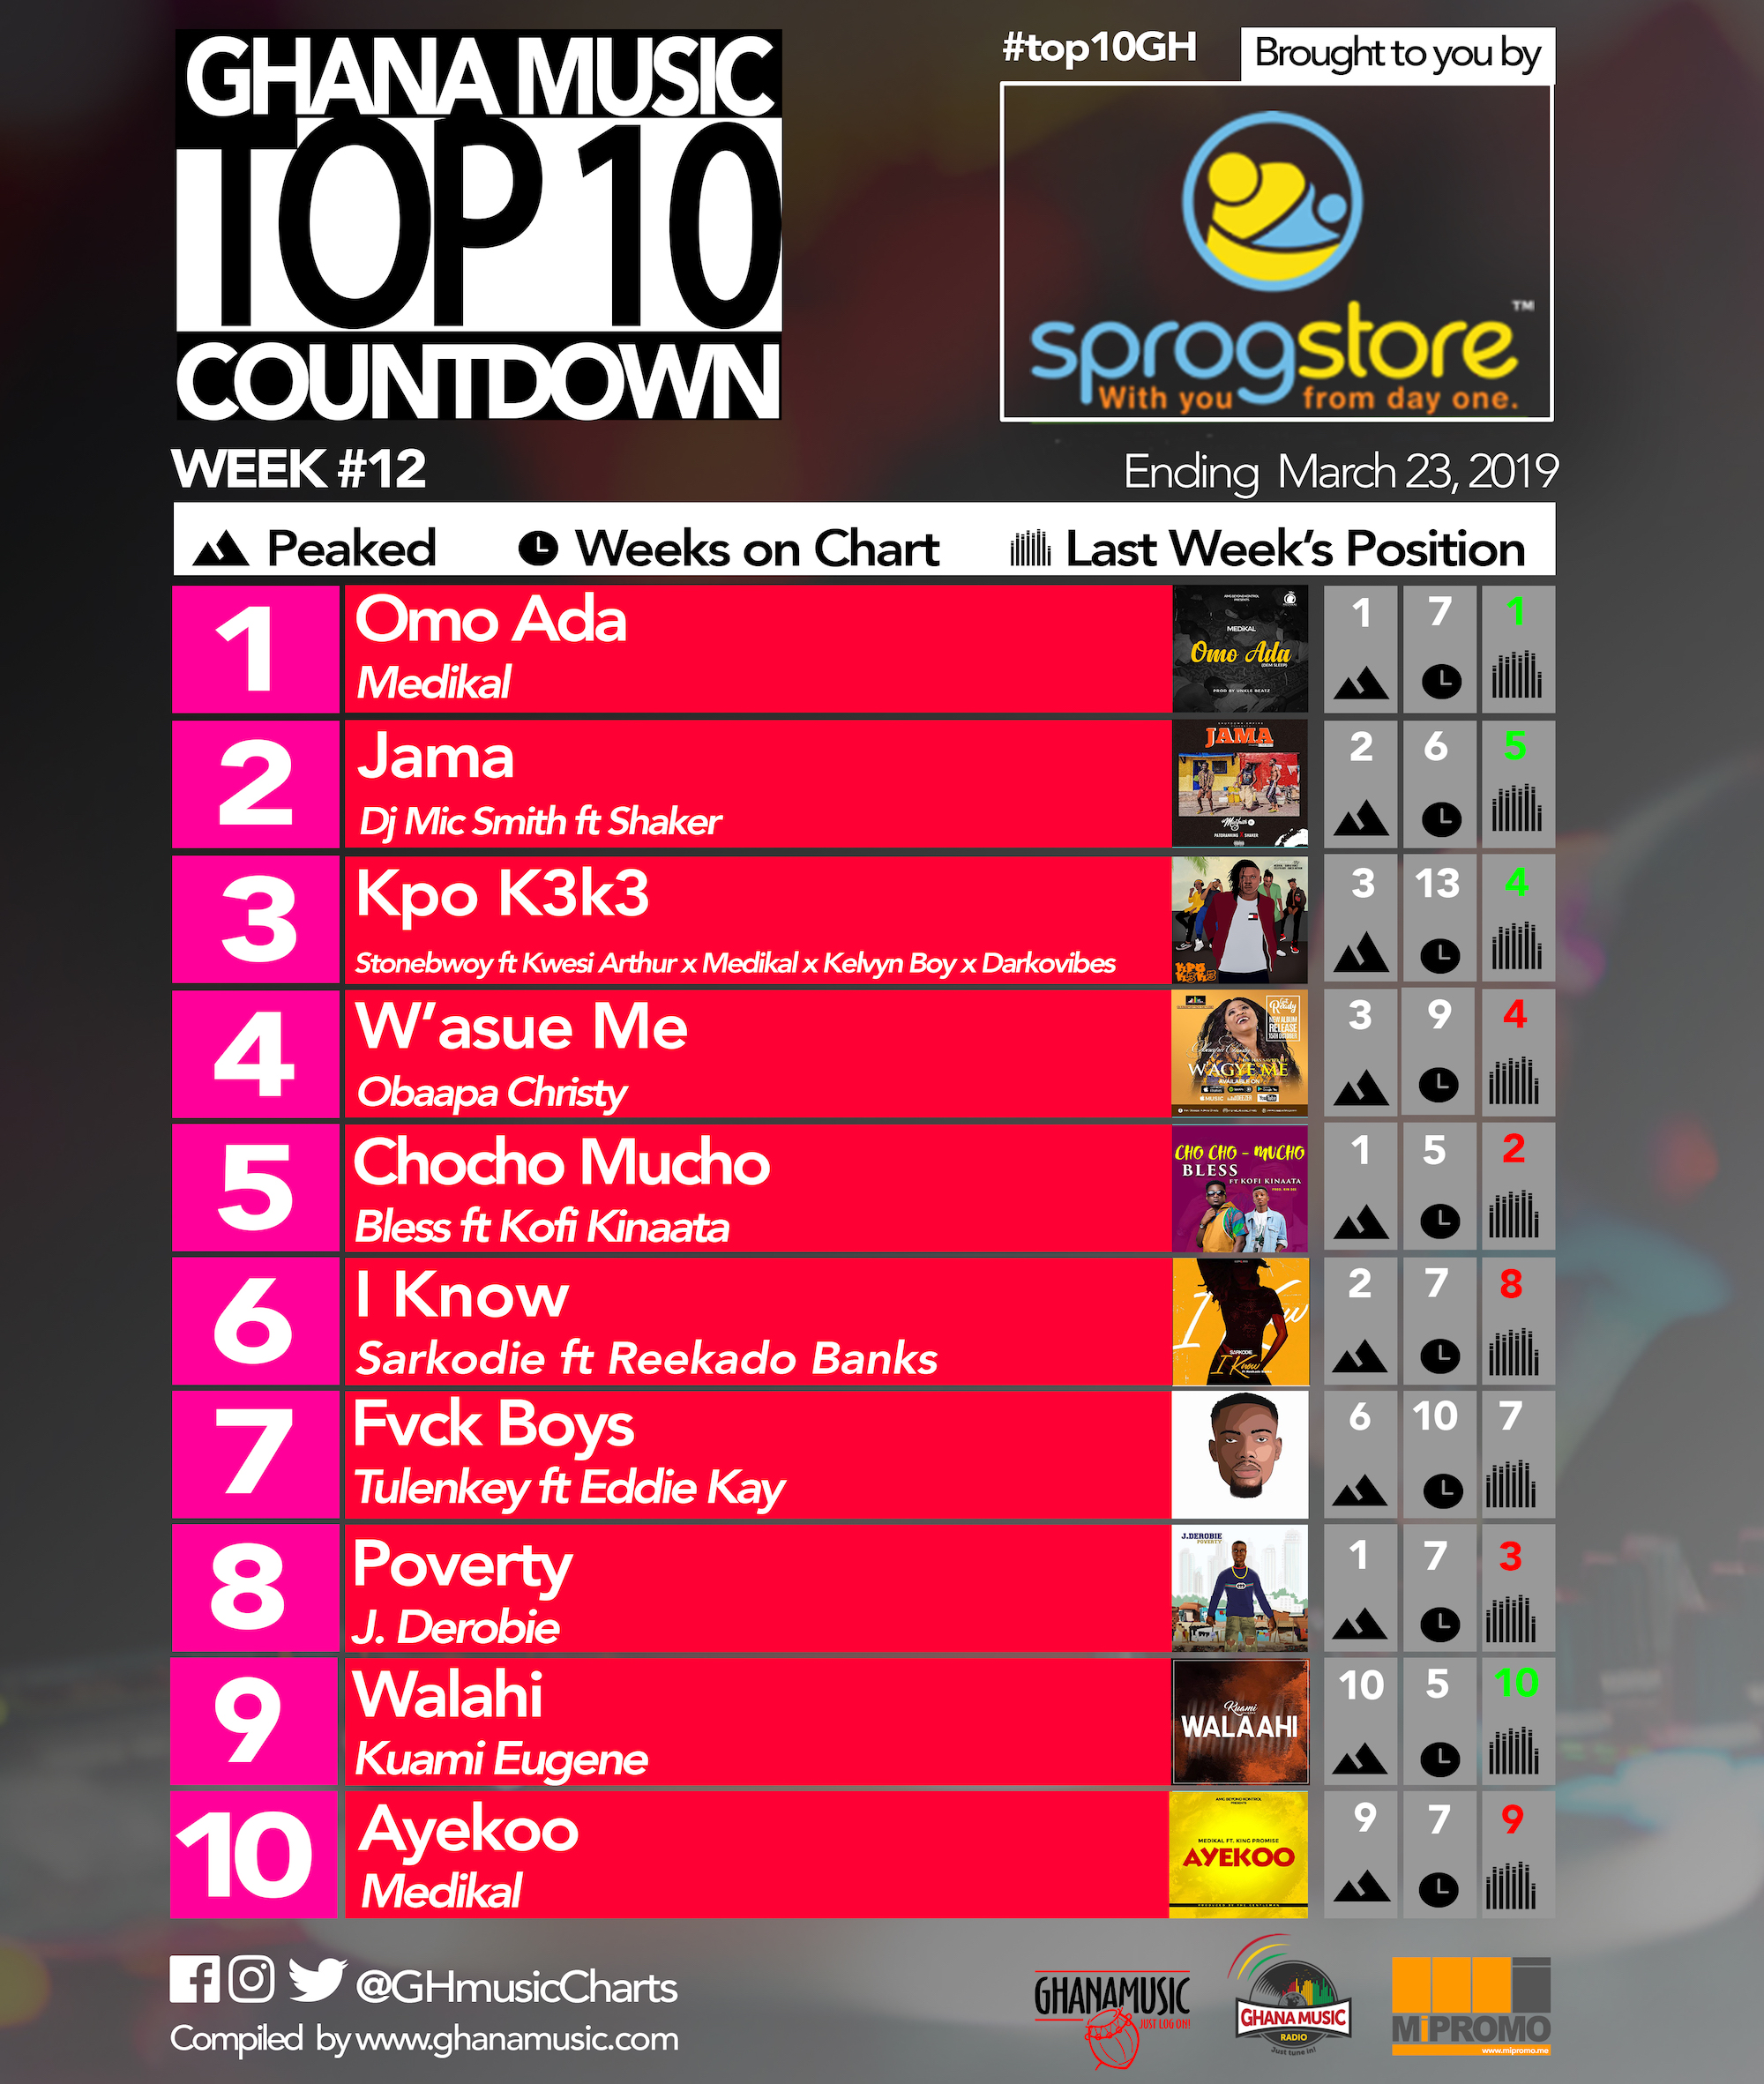 Week #12: Ghana Music Top 10 Countdown